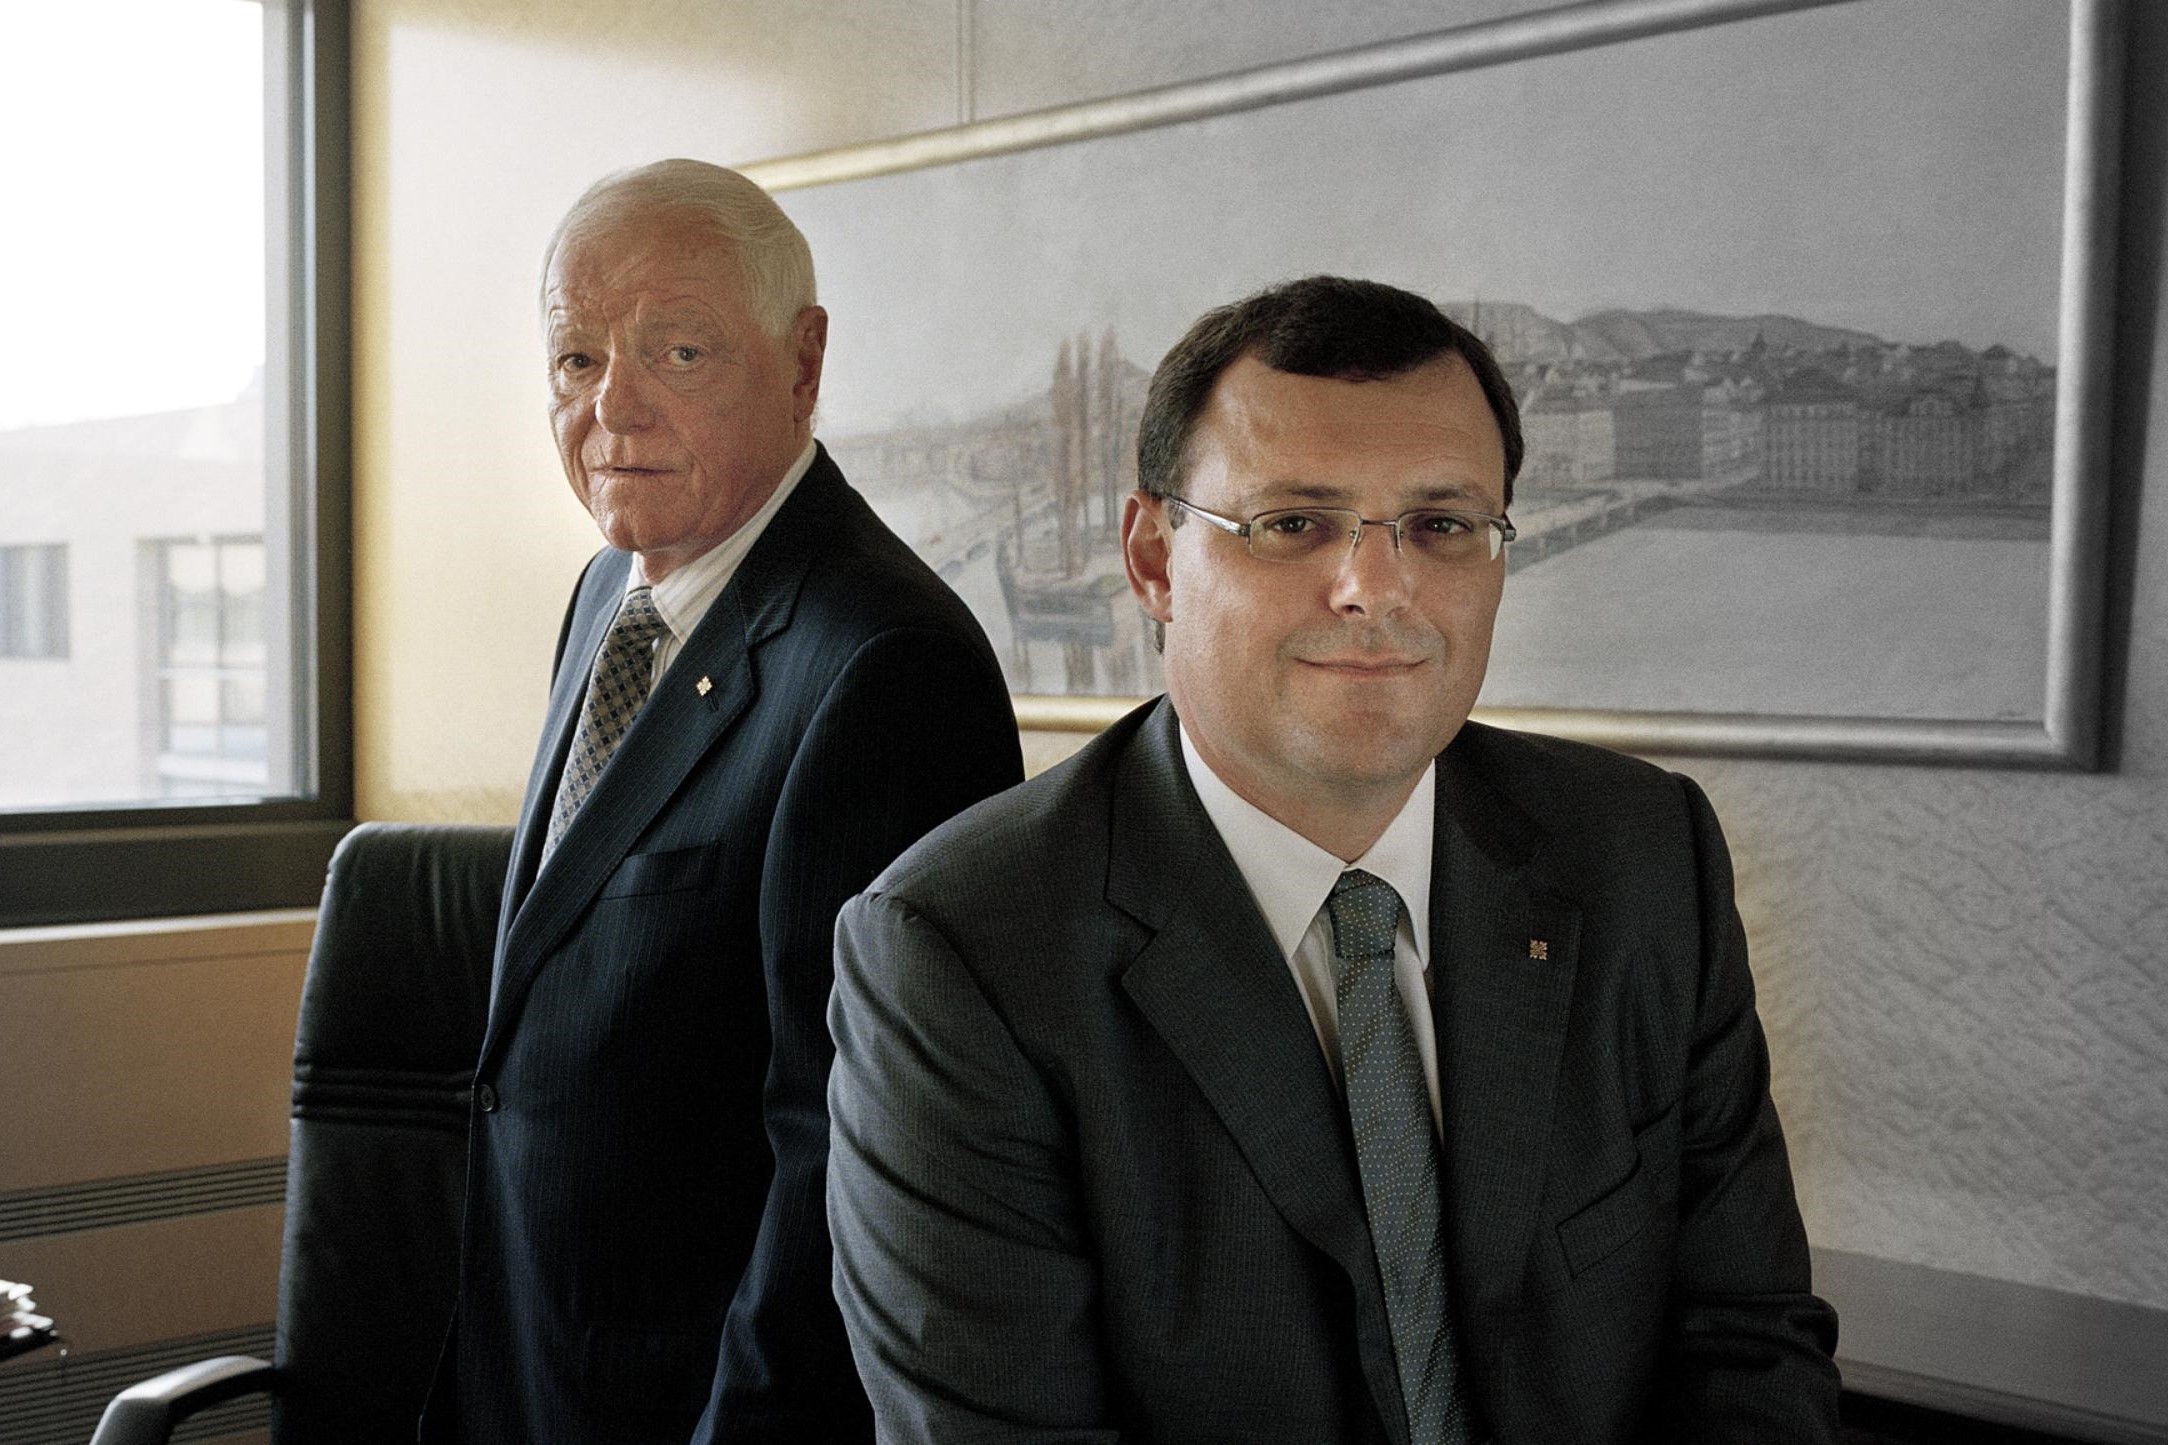 F】 Will LVMH Owner Bernard Arnault Purchase Patek Philippe Too?